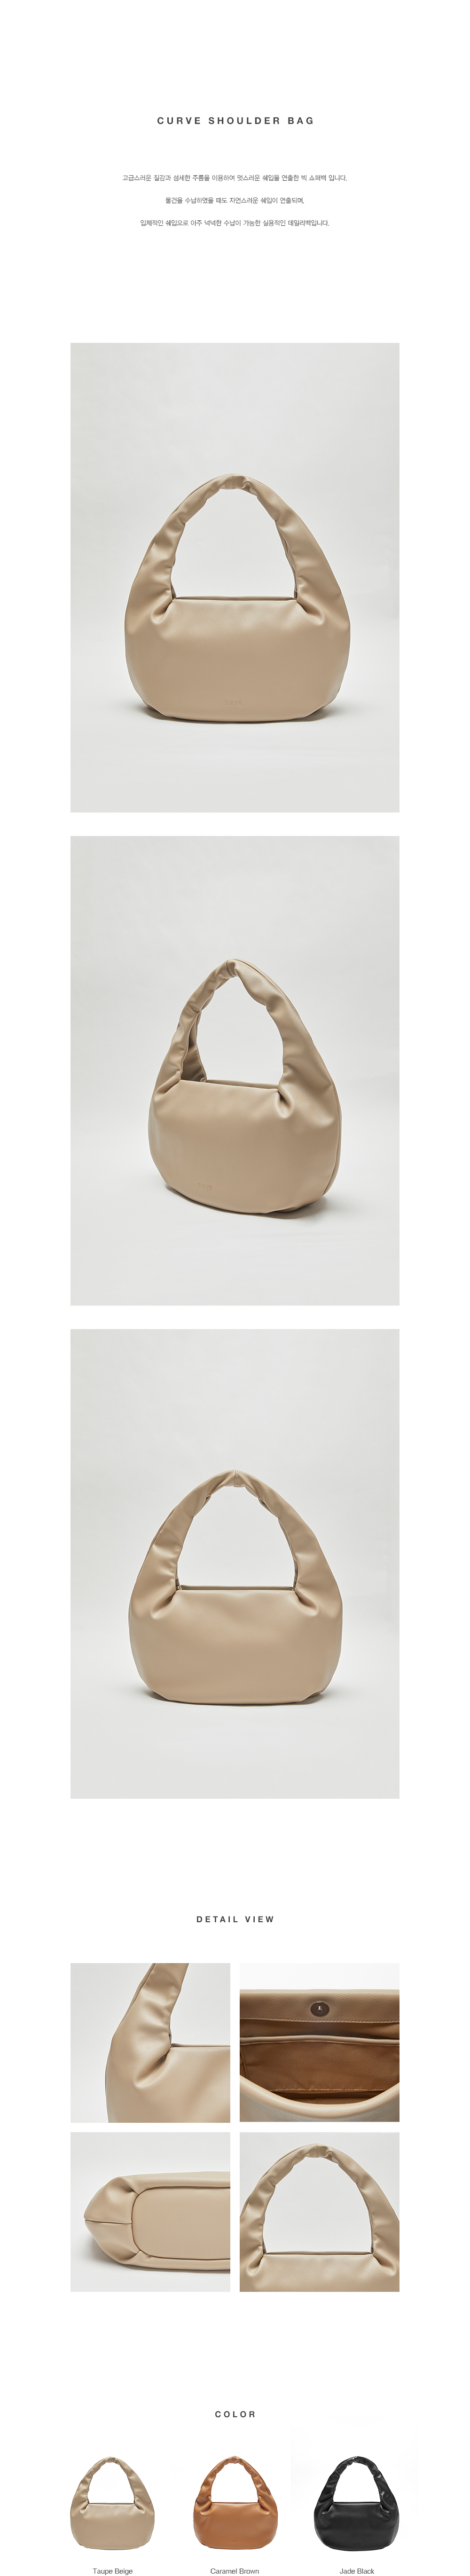 BBYB Curve Shoulder Bag (Taupe Beige)